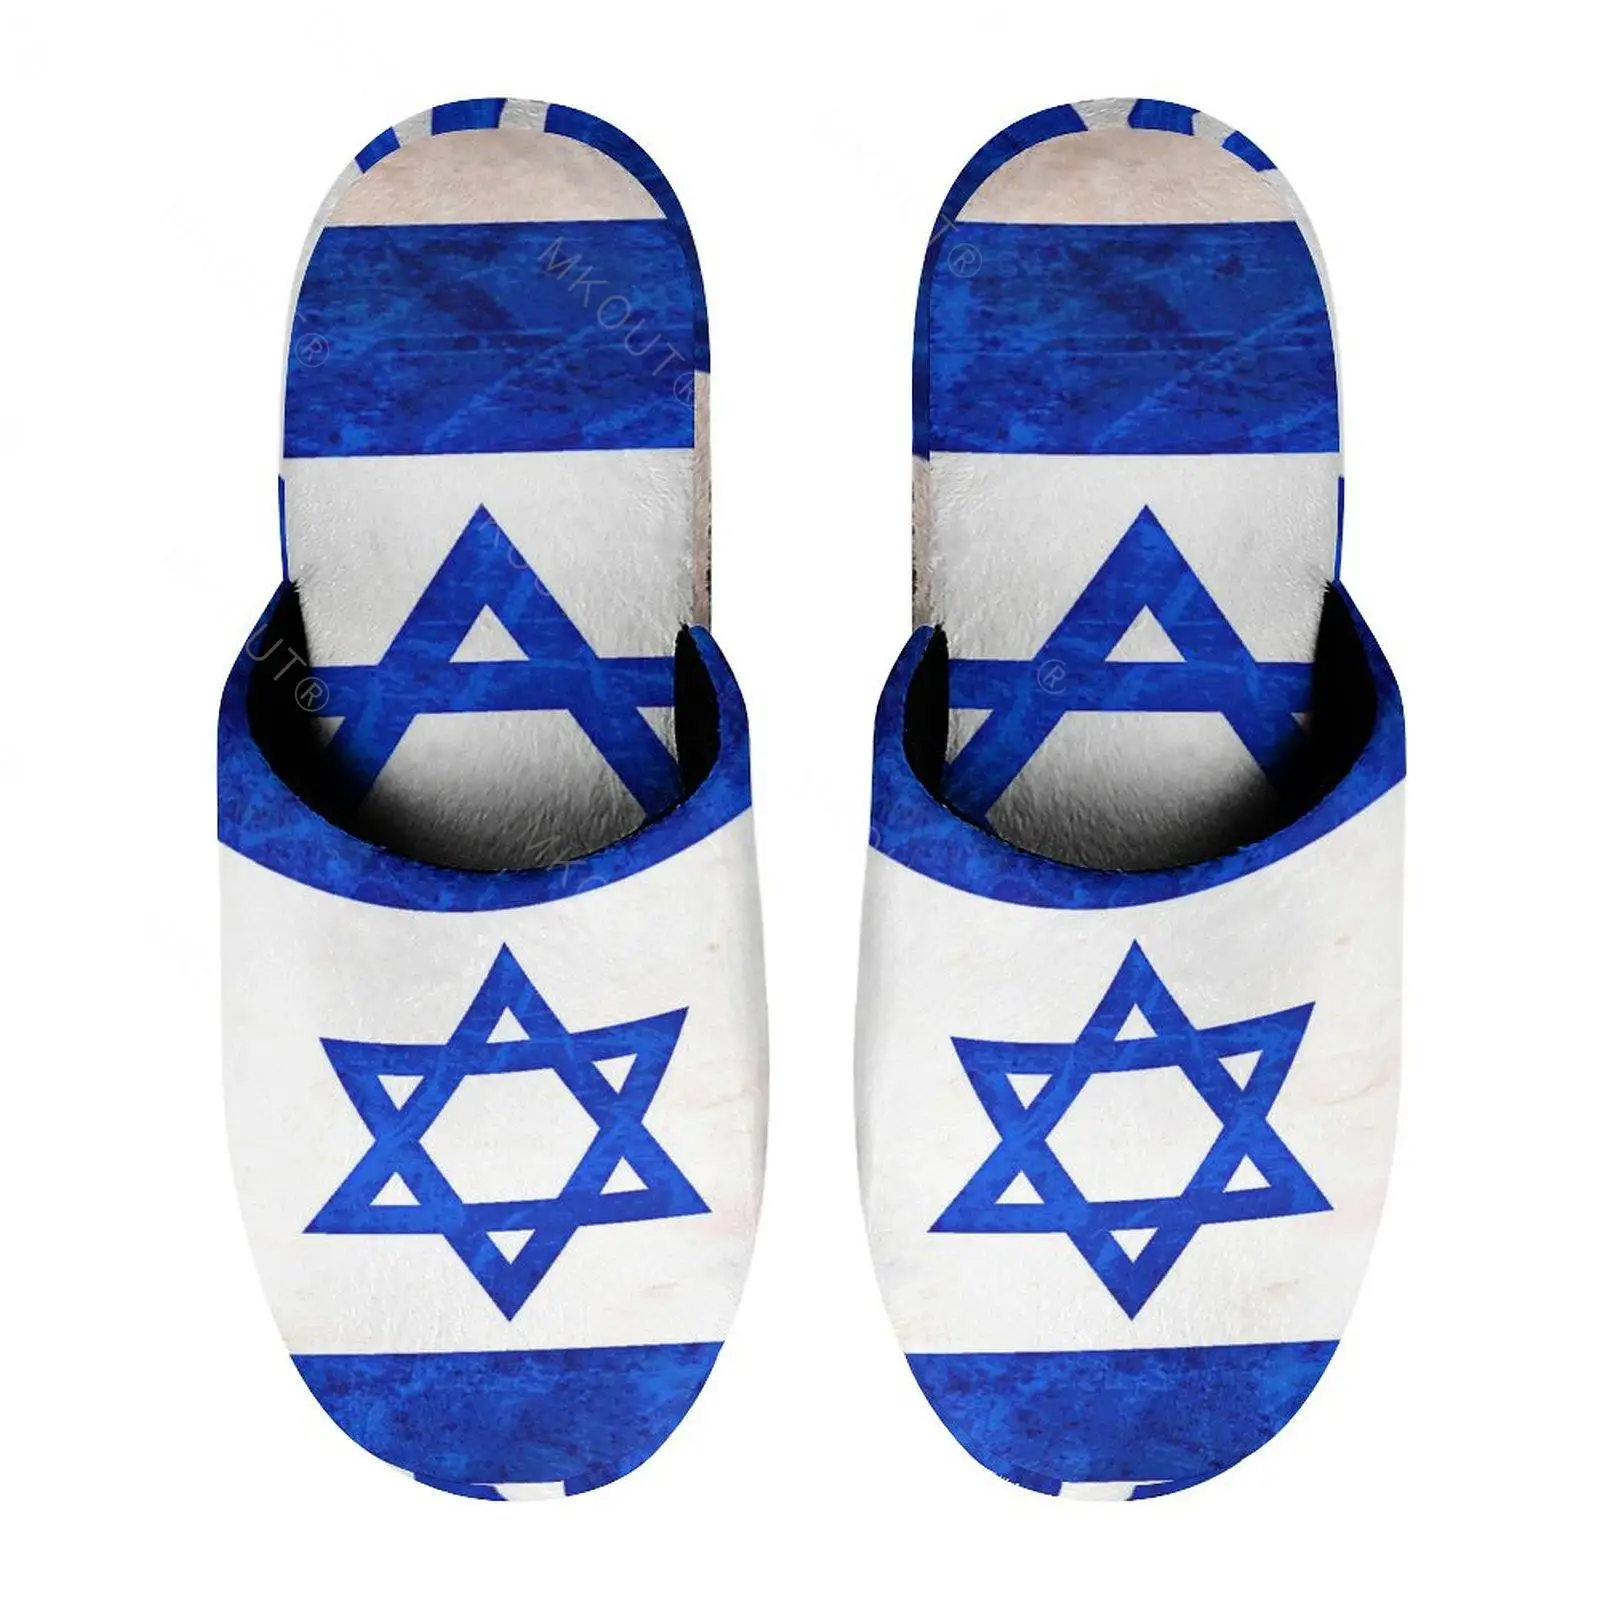 

Теплые хлопковые тапочки с флагом Израиля (11) для мужчин и женщин, толстая мягкая подошва, нескользящая пушистая обувь, домашние тапочки с акулой